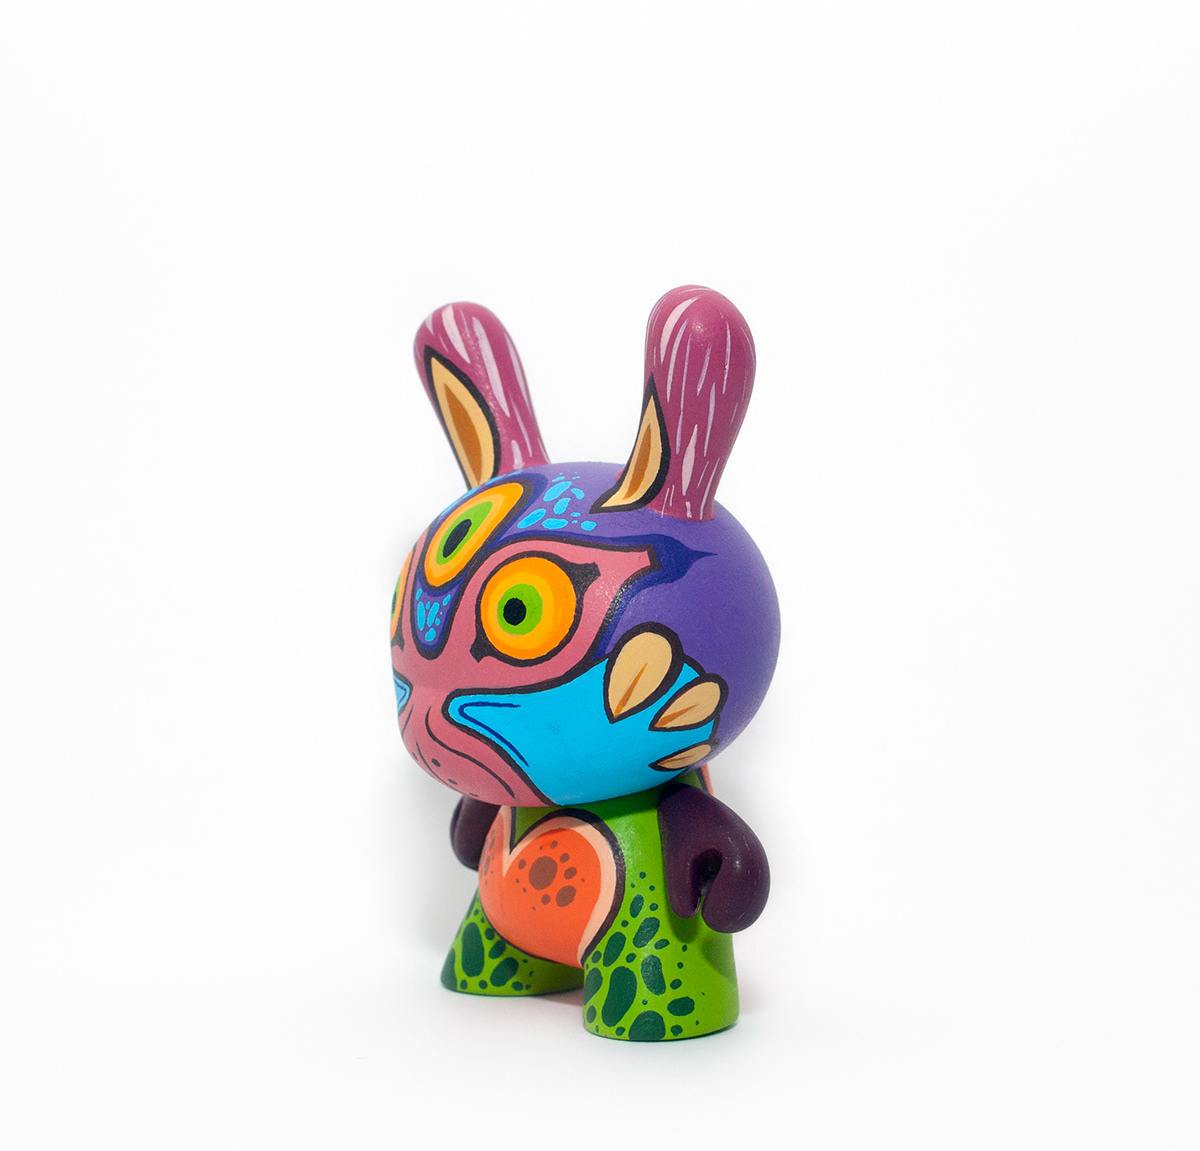 Wuzone Custom Dunny Munny Kidrobot arttoy vinyltoy toy DIY geek zelda Skull Kid commission collectible